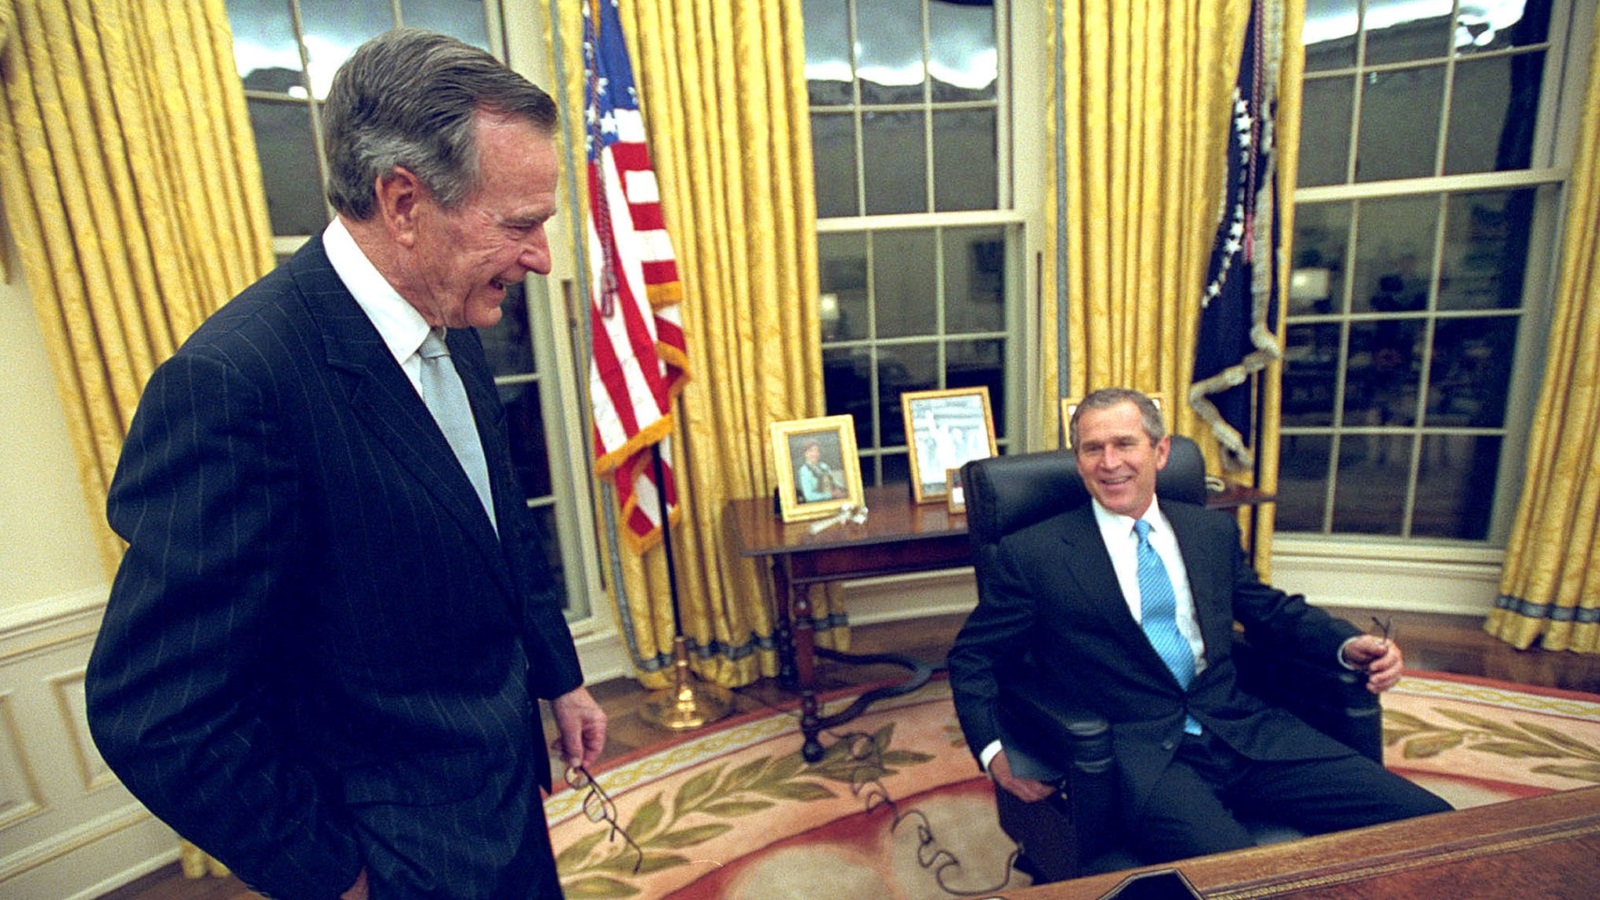 الرئيس جورج بوش الابن جالسا بالمكتب البيضاوي في 20 يناير/كانون الثاني 2001 بينما يشاركه اللقطة والده الرئيس جورج بوش الأب (غيتي)